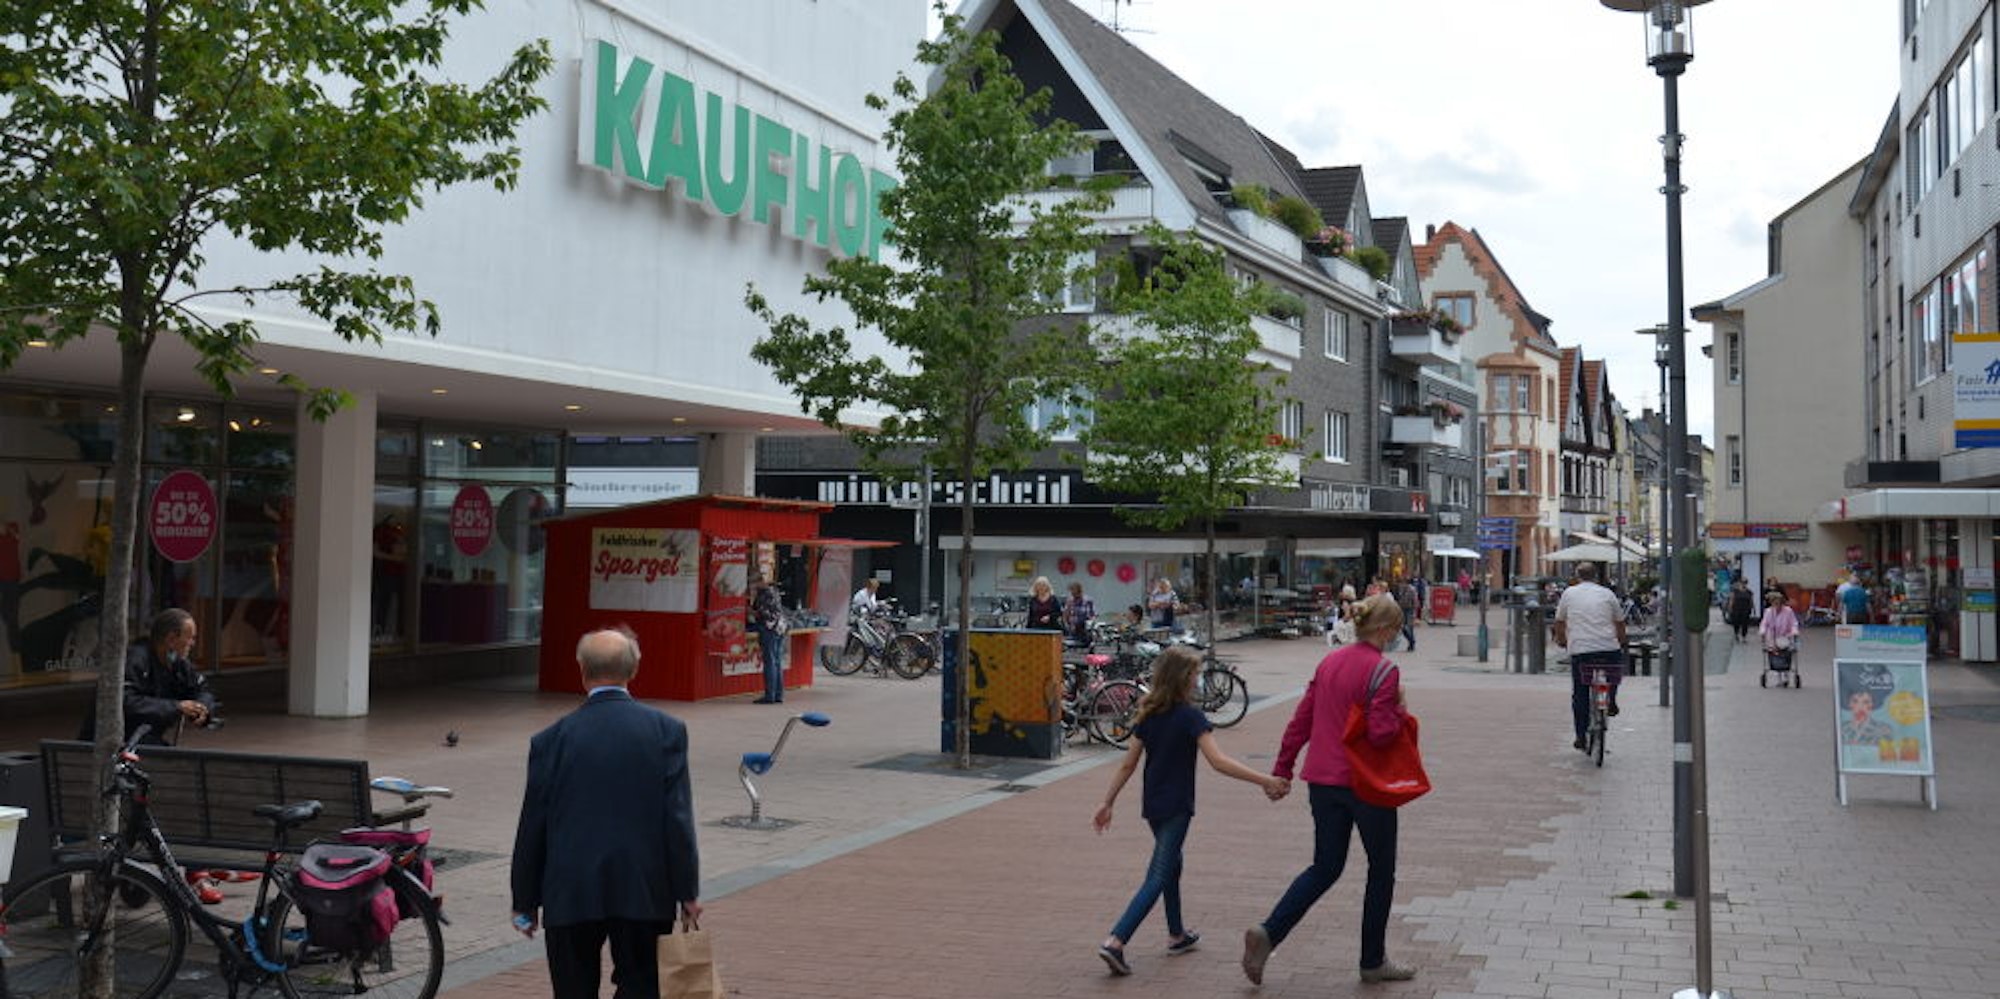 Bislang lockt der Kaufhof viele Passanten in die Brühler Innenstadt, doch die Schließung scheint beschlossene Sache zu sein.